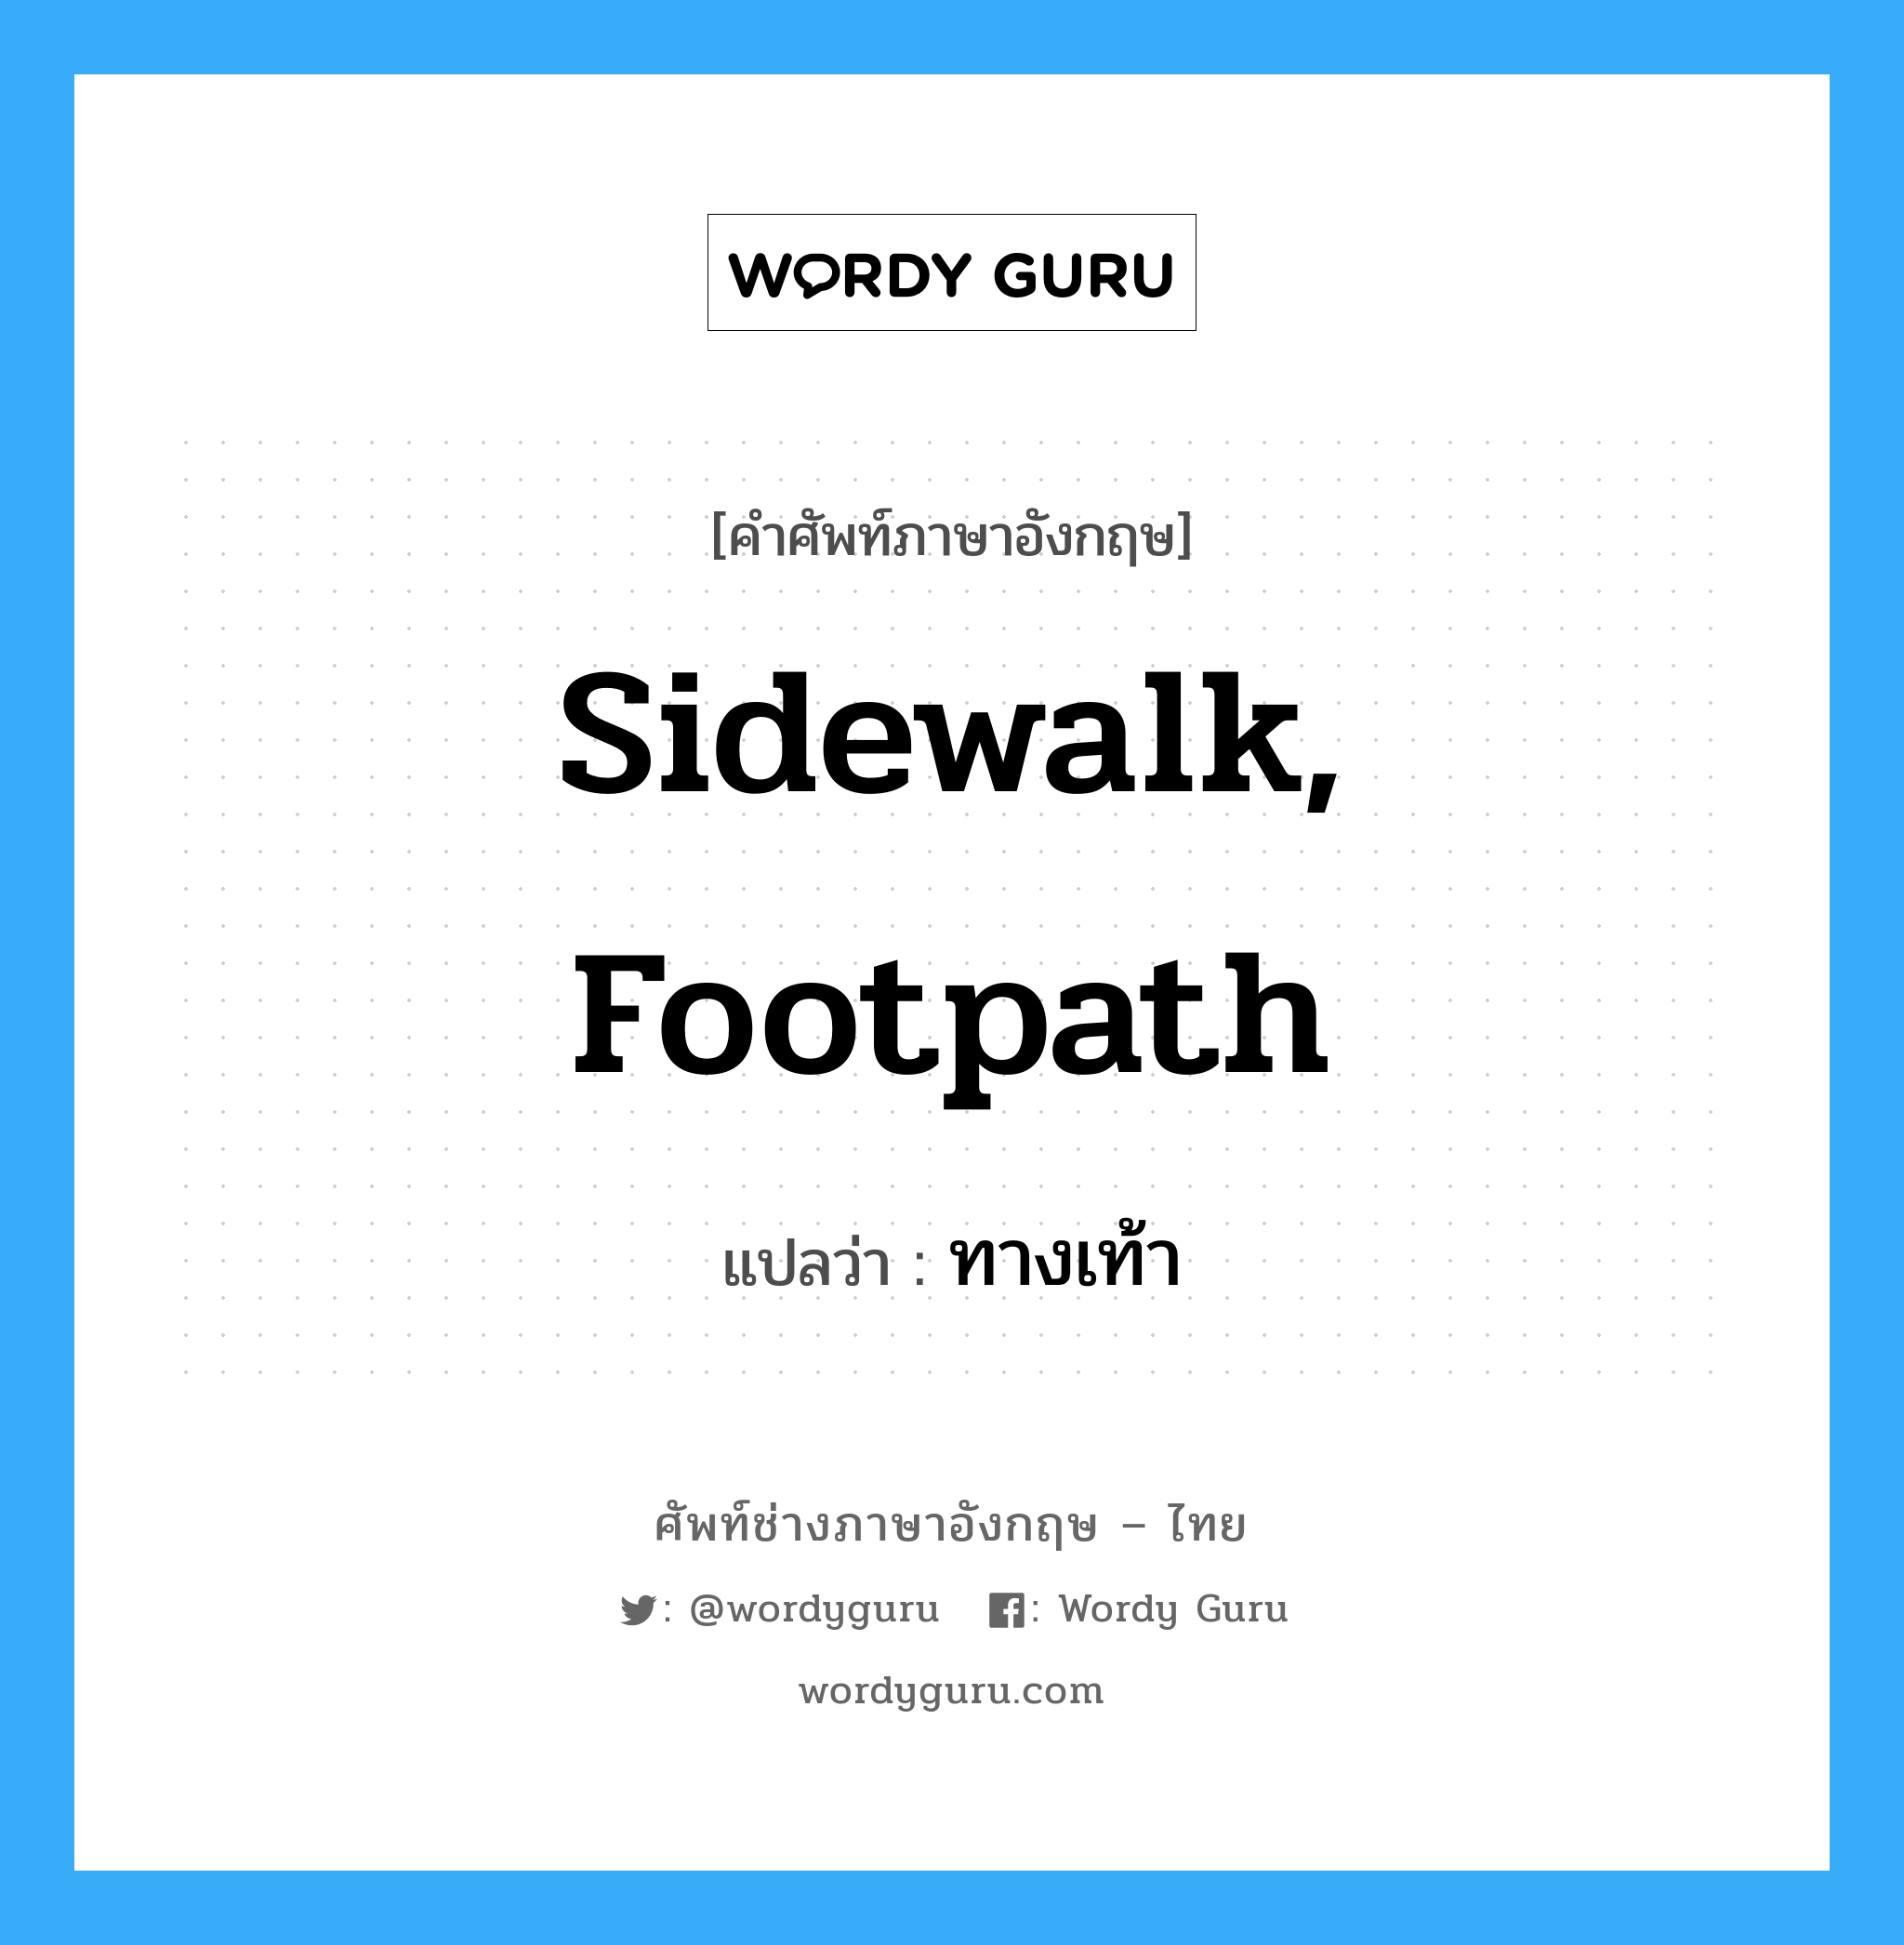 ทางเท้า ภาษาอังกฤษ?, คำศัพท์ช่างภาษาอังกฤษ - ไทย ทางเท้า คำศัพท์ภาษาอังกฤษ ทางเท้า แปลว่า sidewalk, footpath